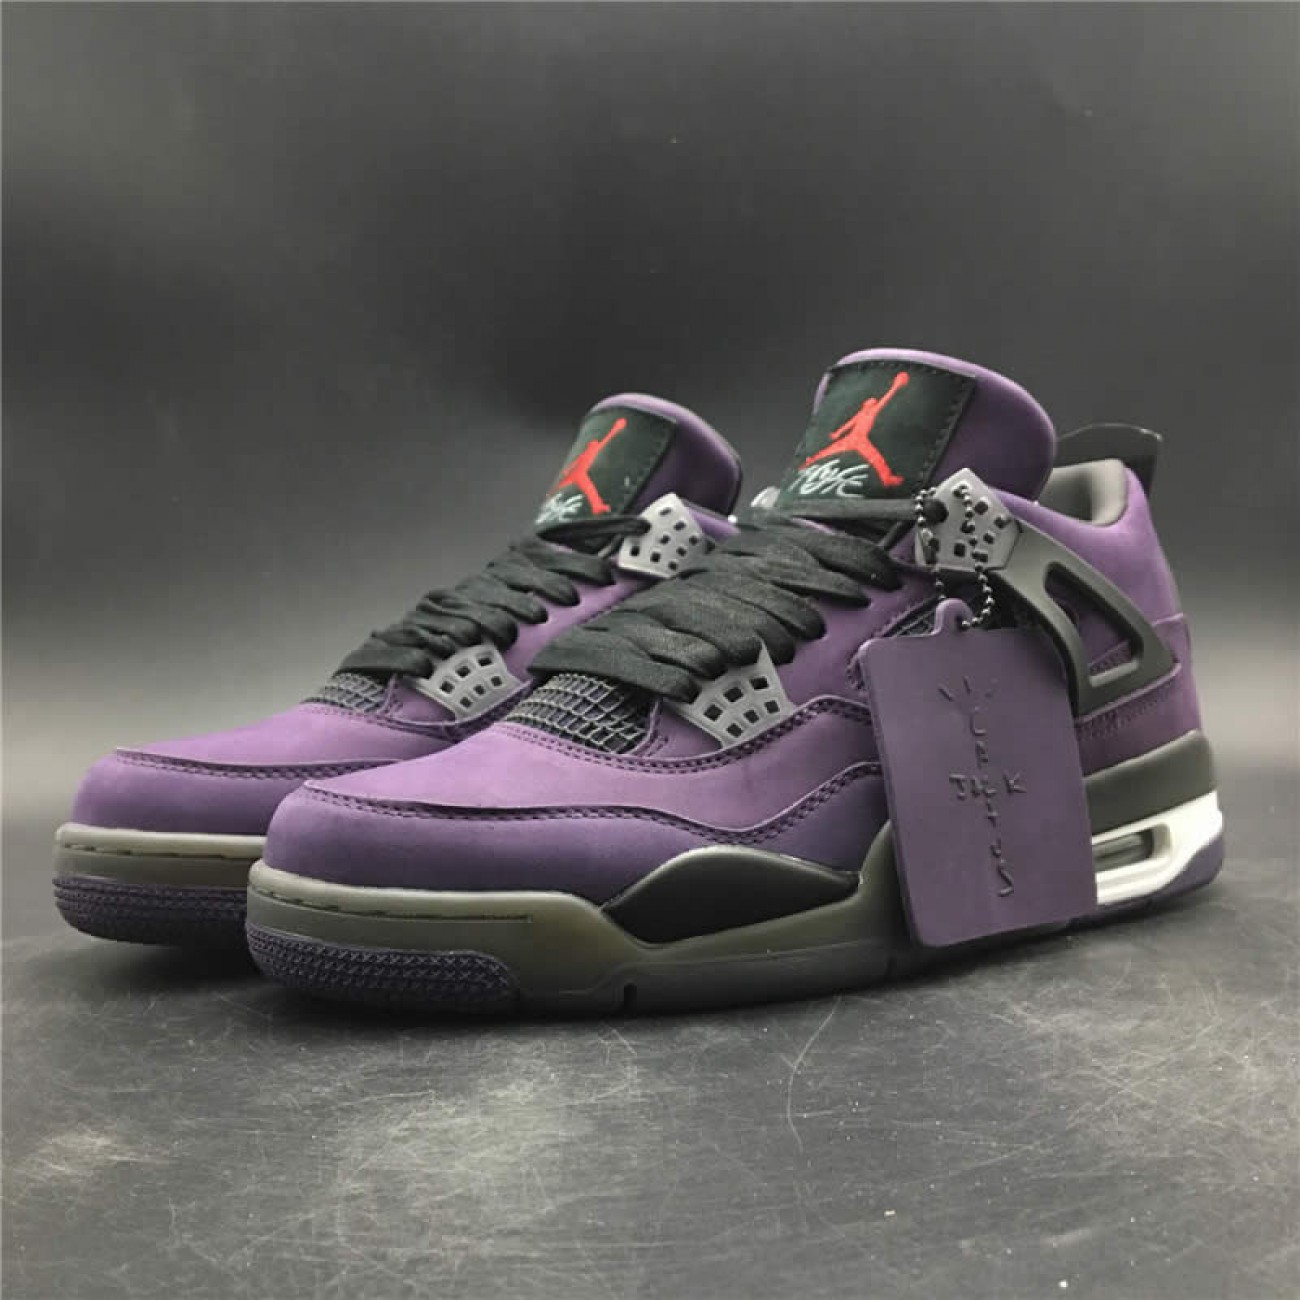 Travis Scott x Air Jordan 4 Purple On Feet